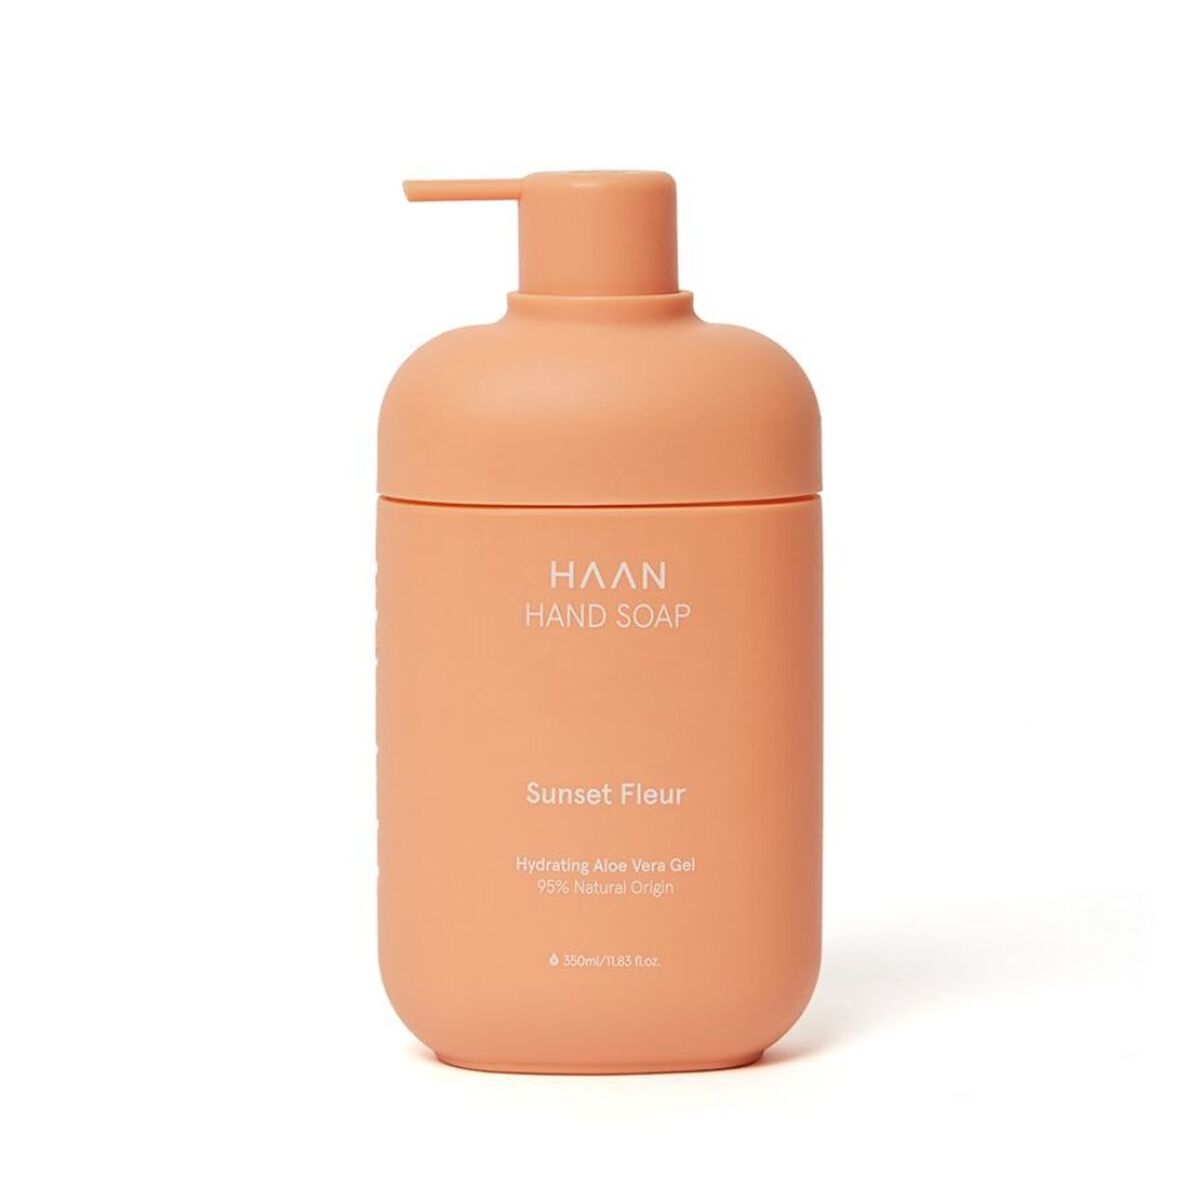 Hand Soap Haan Sunset Fleur 350 ml-0